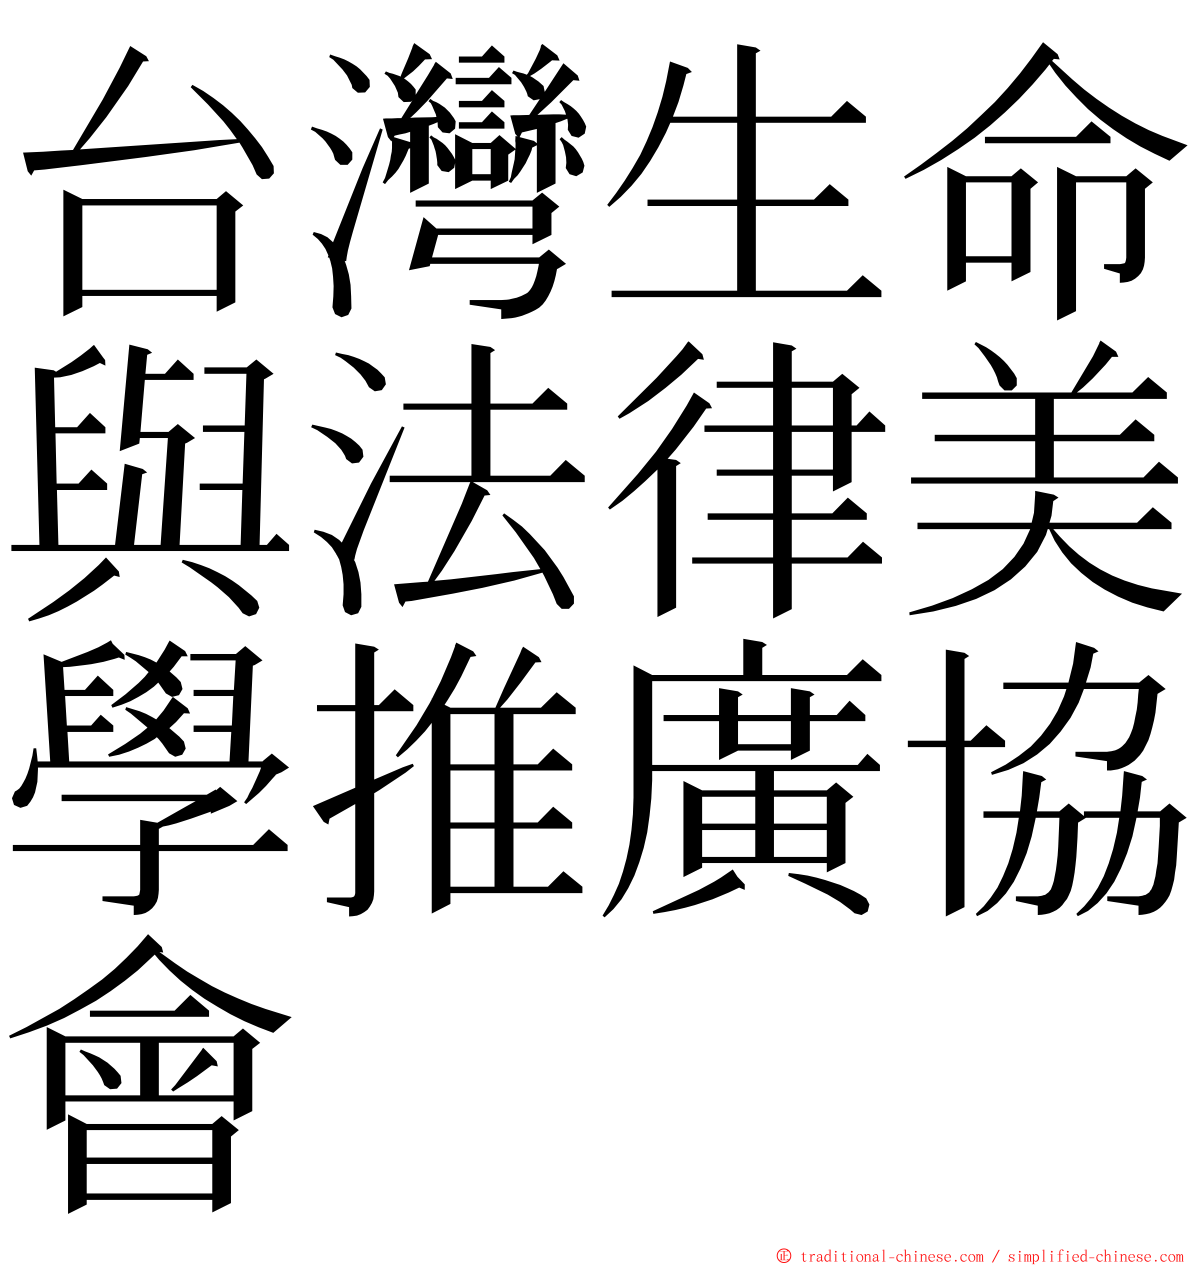 台灣生命與法律美學推廣協會 ming font